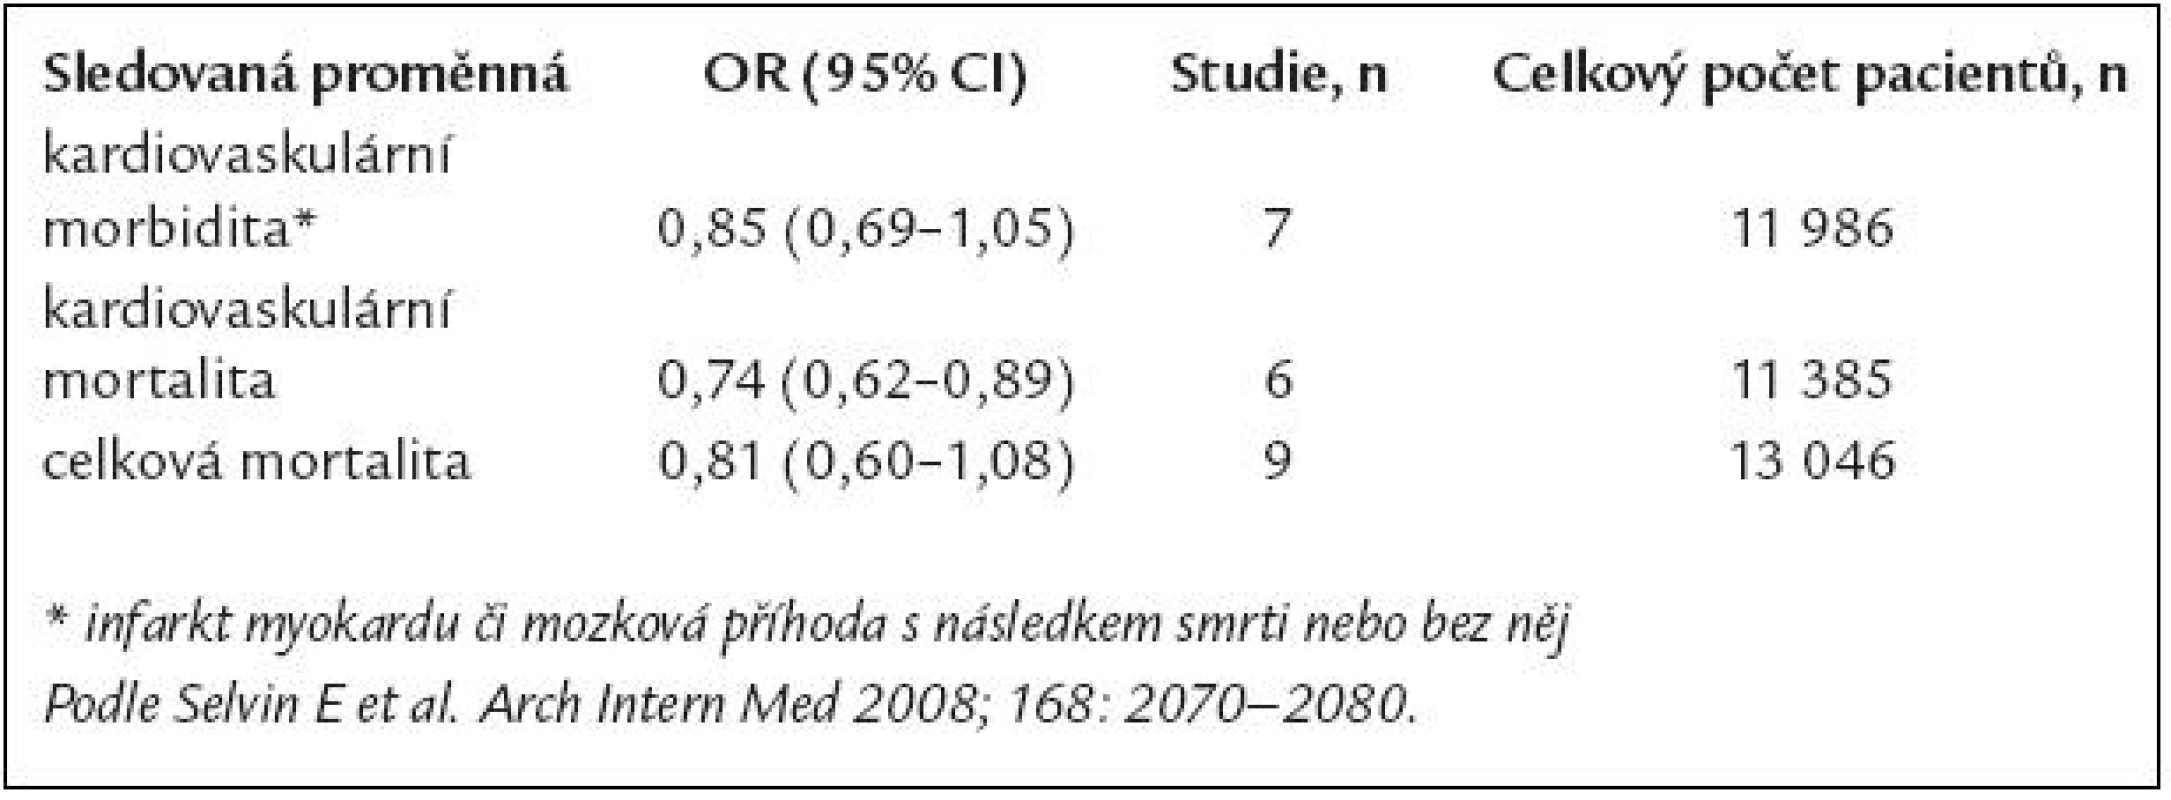 Poměry šancí (Odds ratios) (95% CI) pro účinnost metforminu oproti kterémukoli srovnávanému perorálnímu antidiabetickému režimu nebo placebu v metaanalýze.